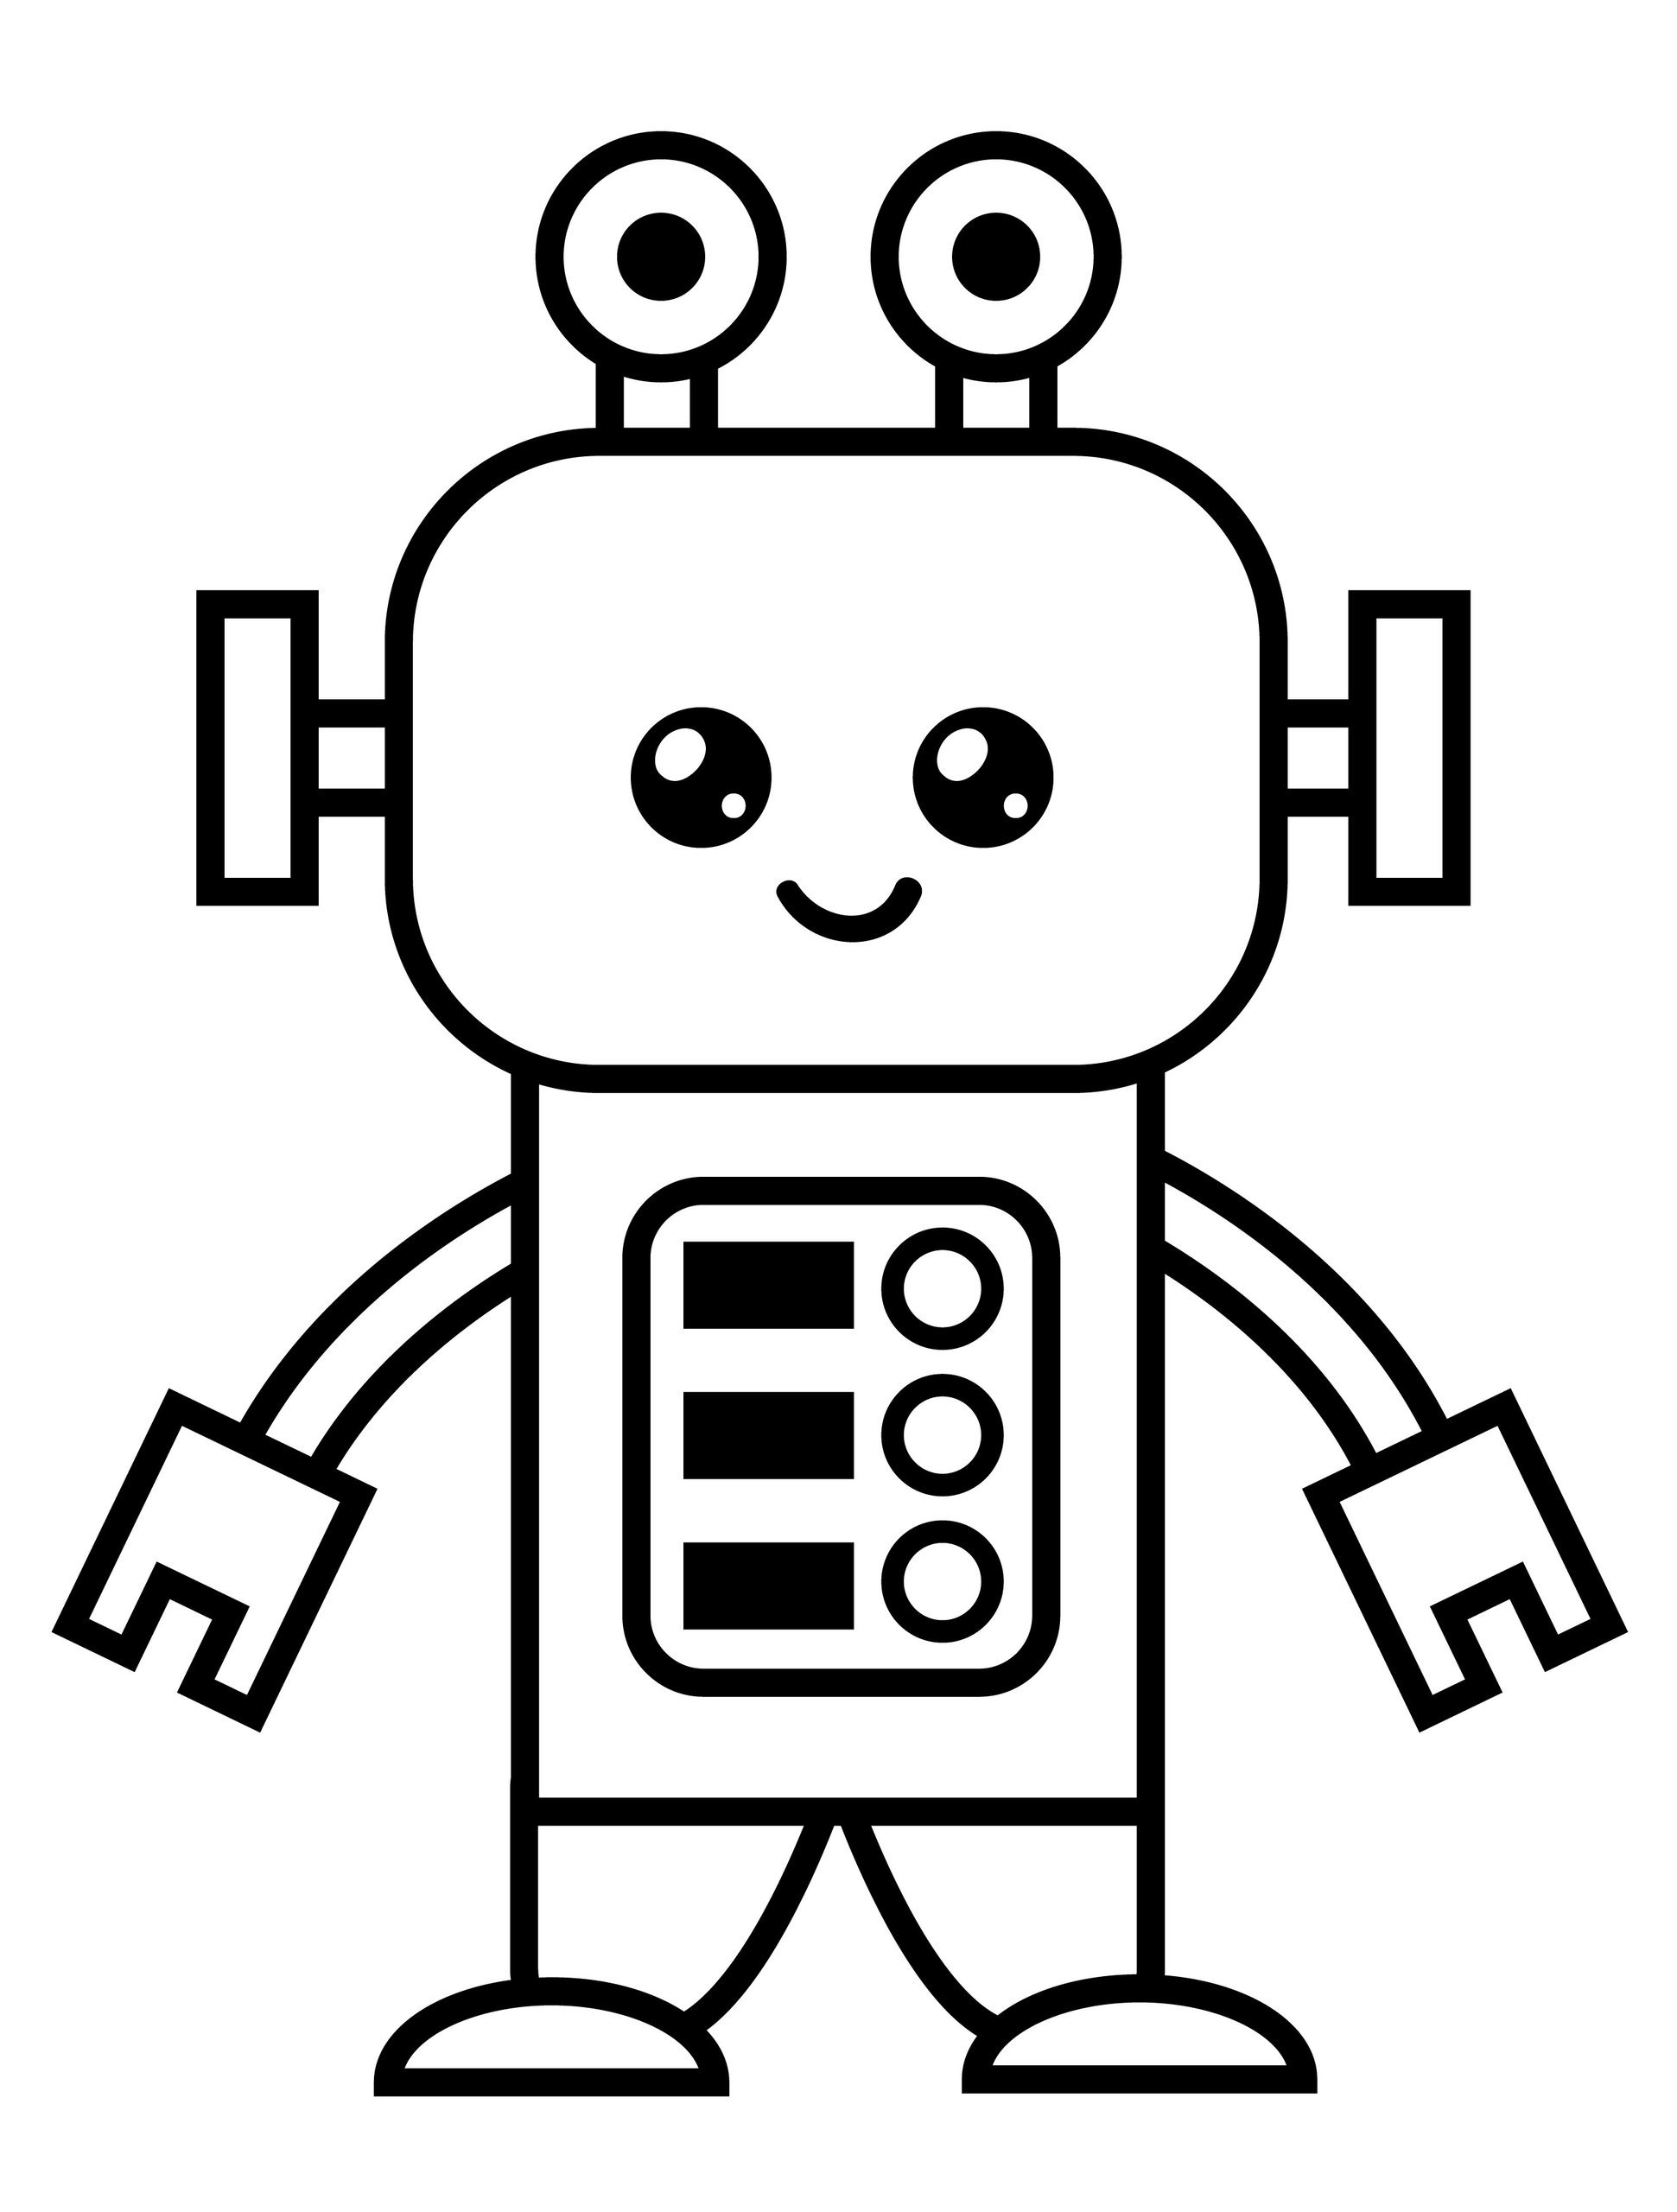 Робототехника раскраска для детей